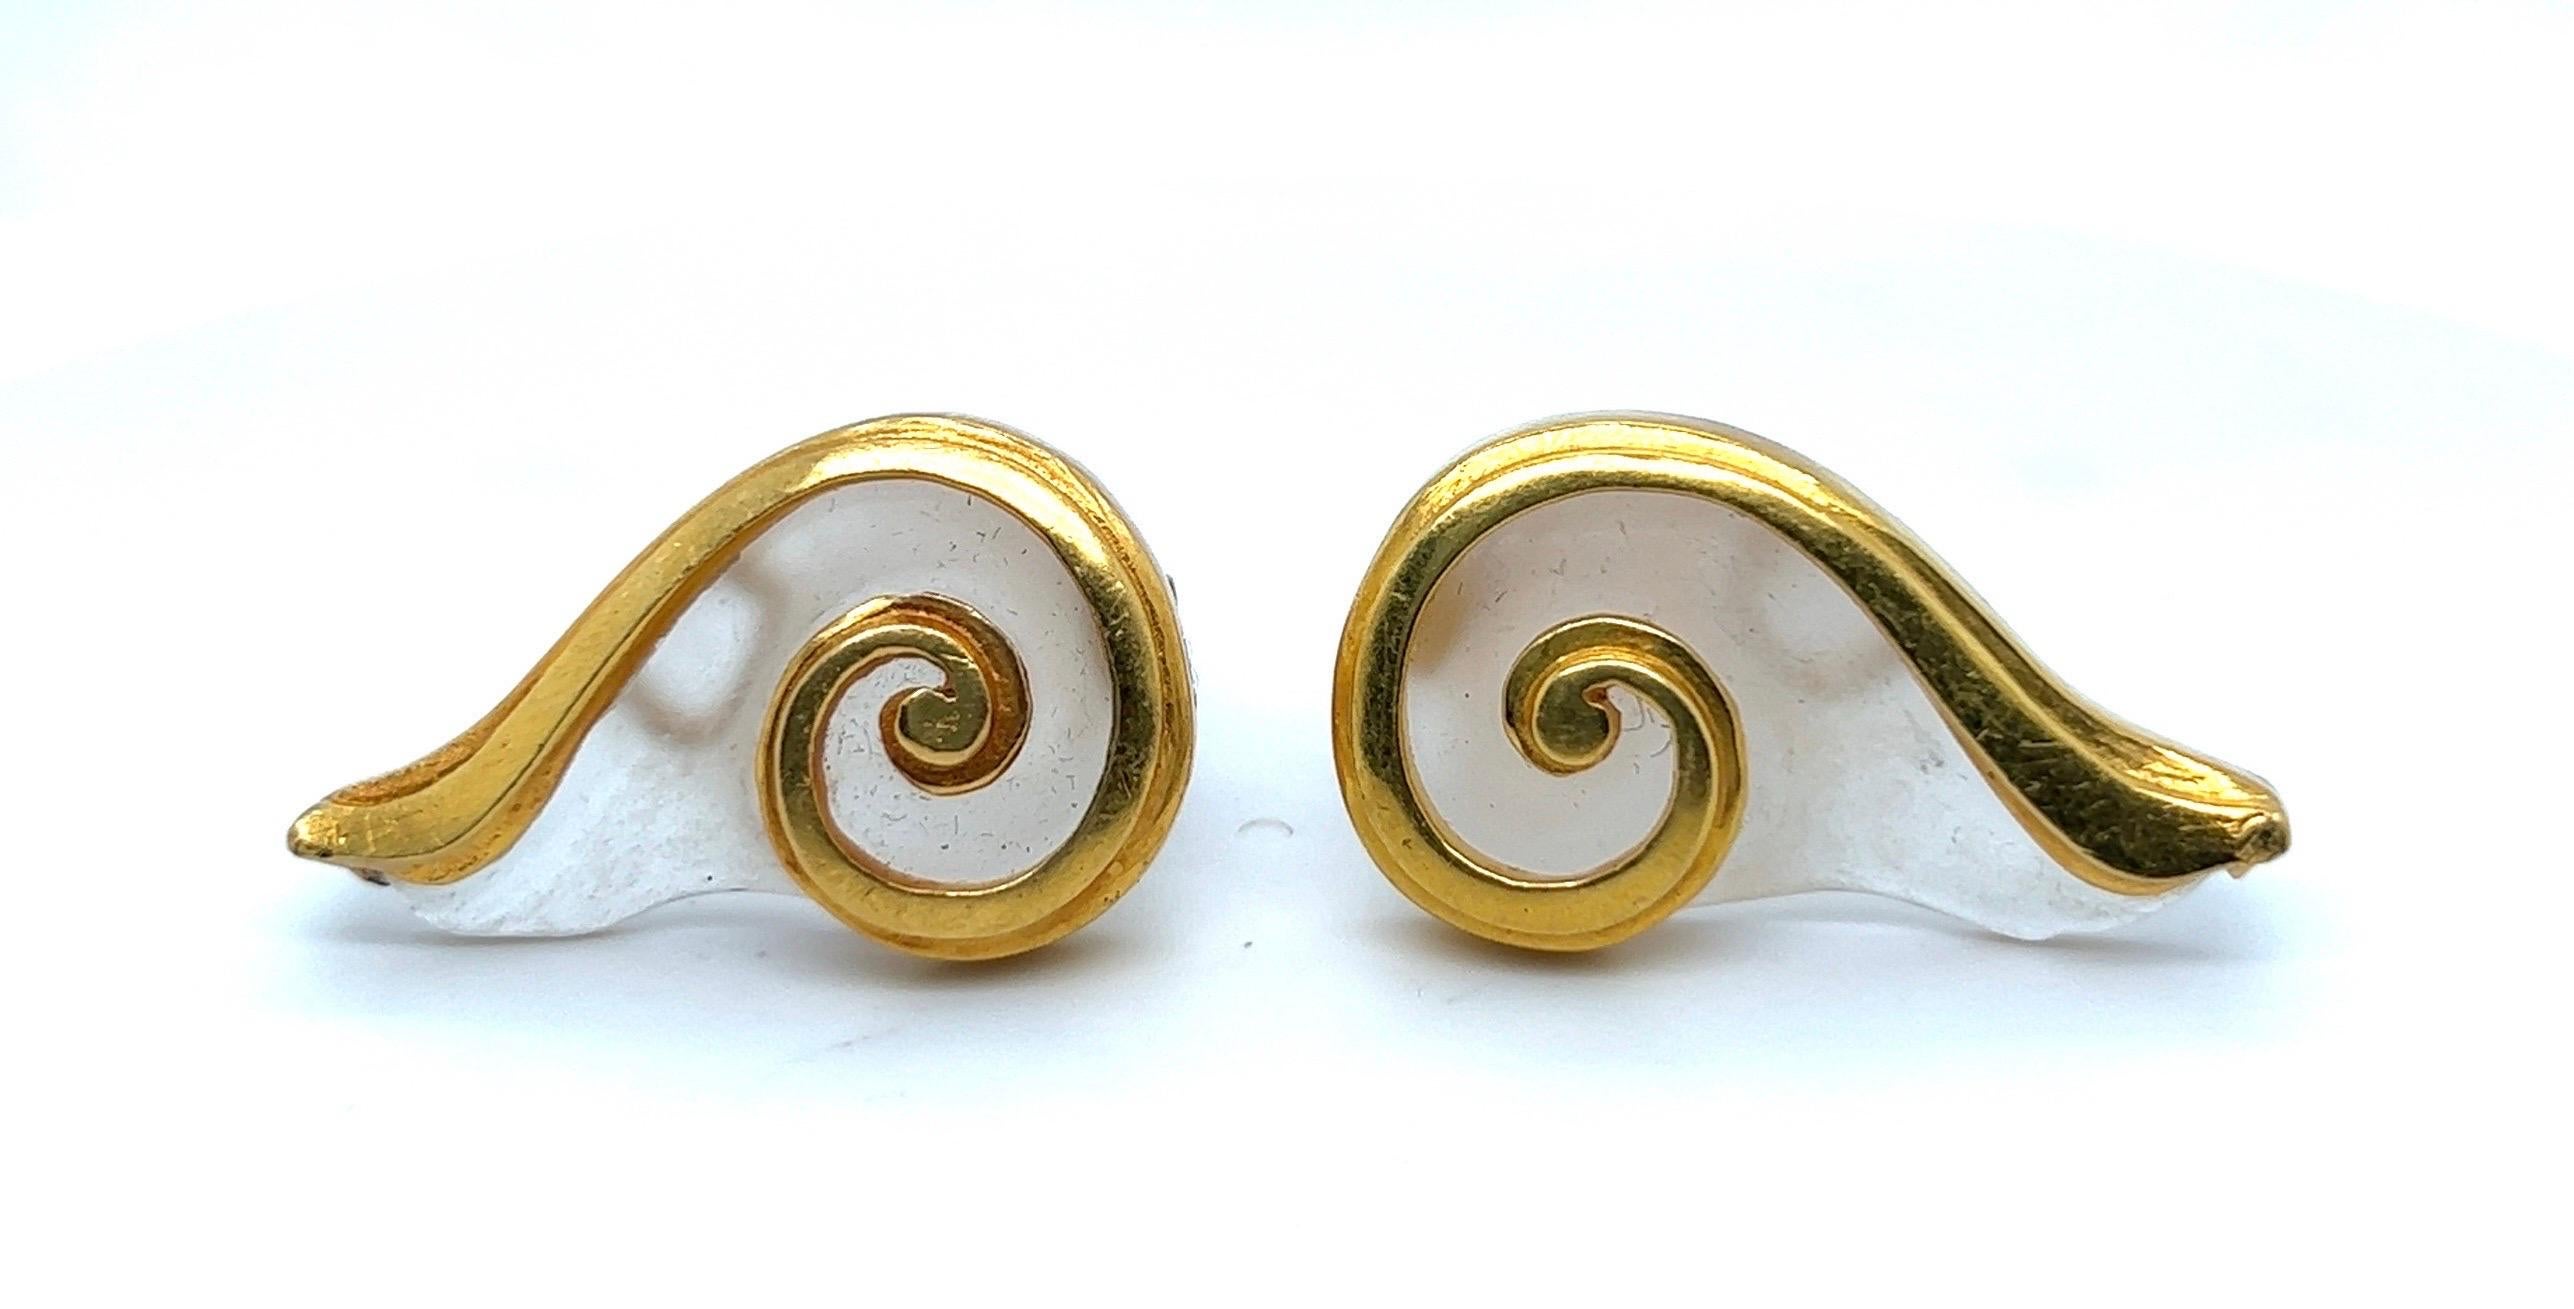 Wunderschönes Paar Ohrringe aus Gelbgold und Bergkristall des griechischen Juweliers Lalaounis.

Sie sind aus 21-karätigem Gelbgold gefertigt, haben jeweils die Form einer stilisierten Muschel und sind mit einer Einlage aus halbtransparentem,